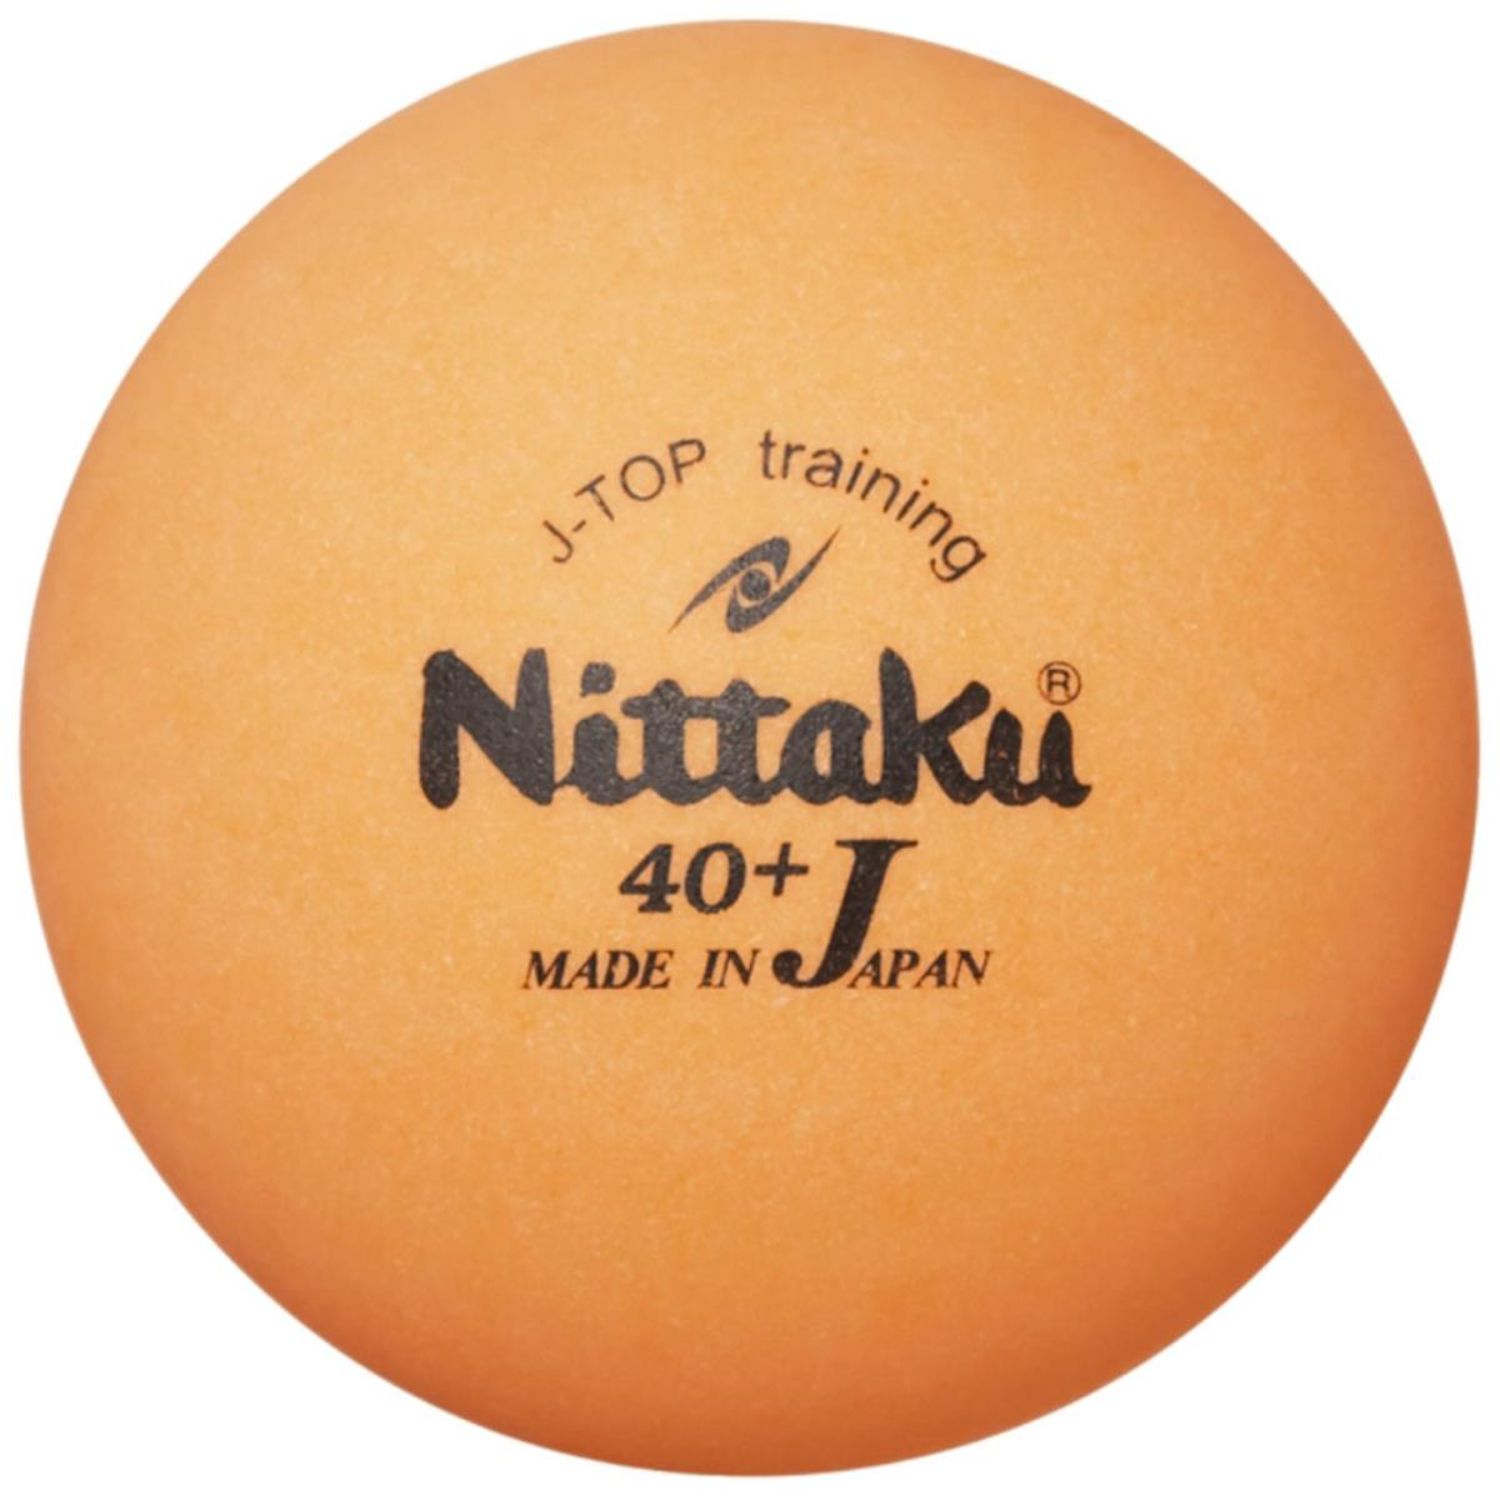 全商品オープニング価格特別価格 Nittaku ニッタク 卓球ボール 取り寄せ品 Whitesforracialequity Org